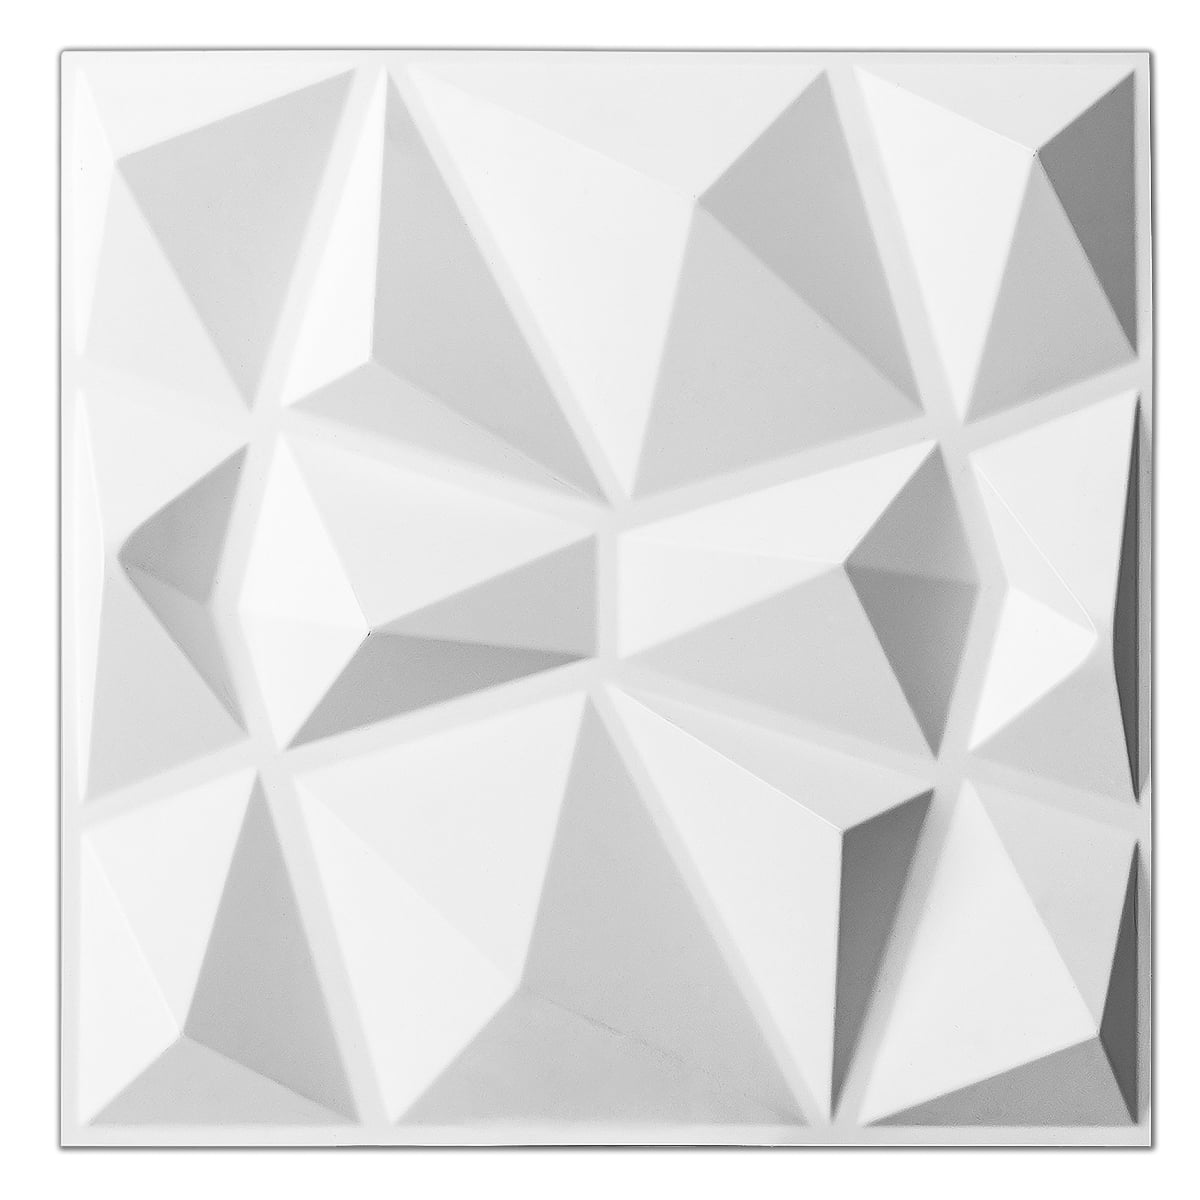 Art3d Decorative 3D Wall Panels in Diamond Design, 12x12 Matt White (33  Pack)